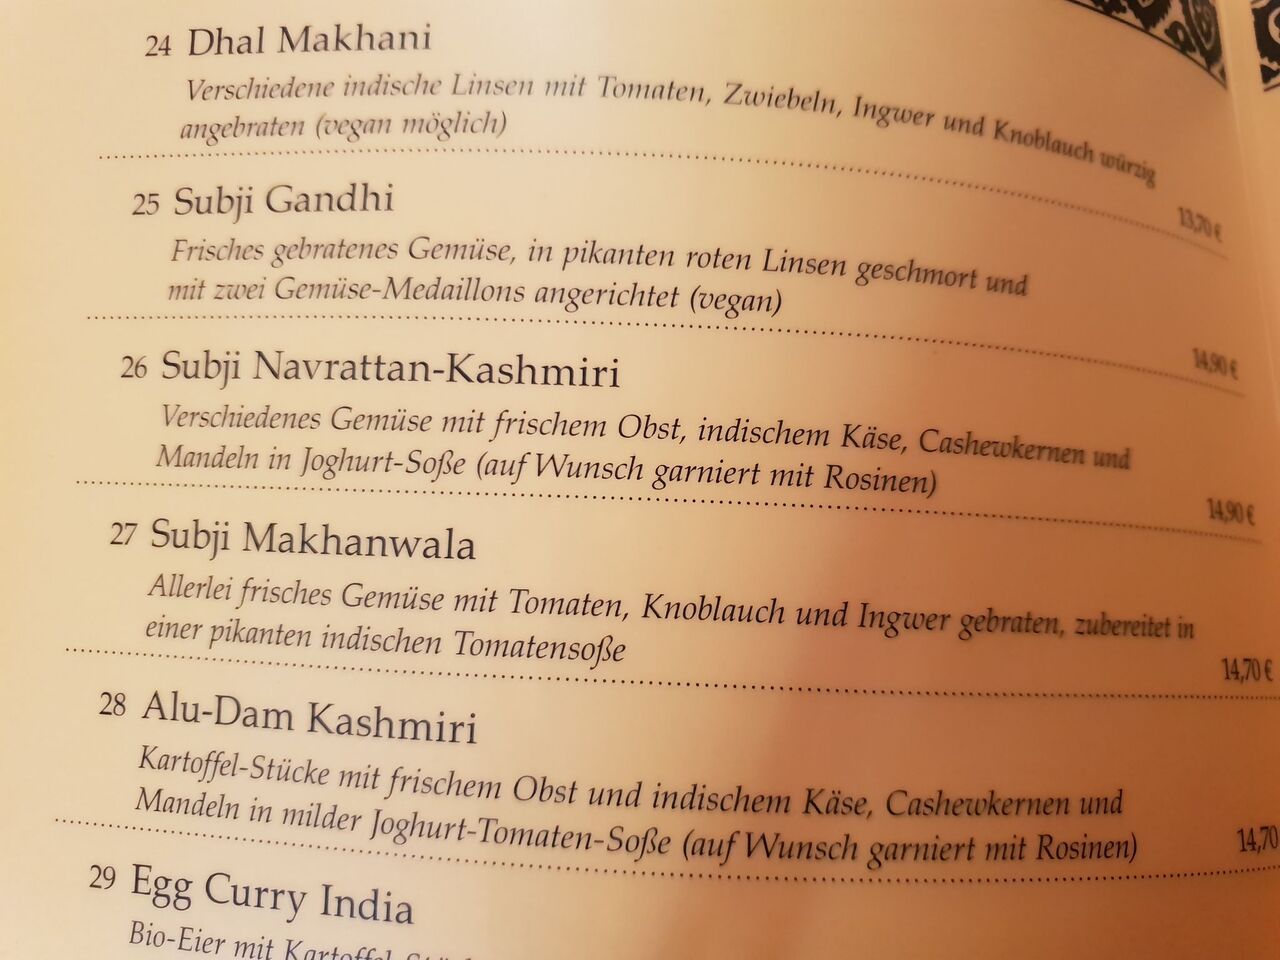 A photo of Restaurant Gandhi